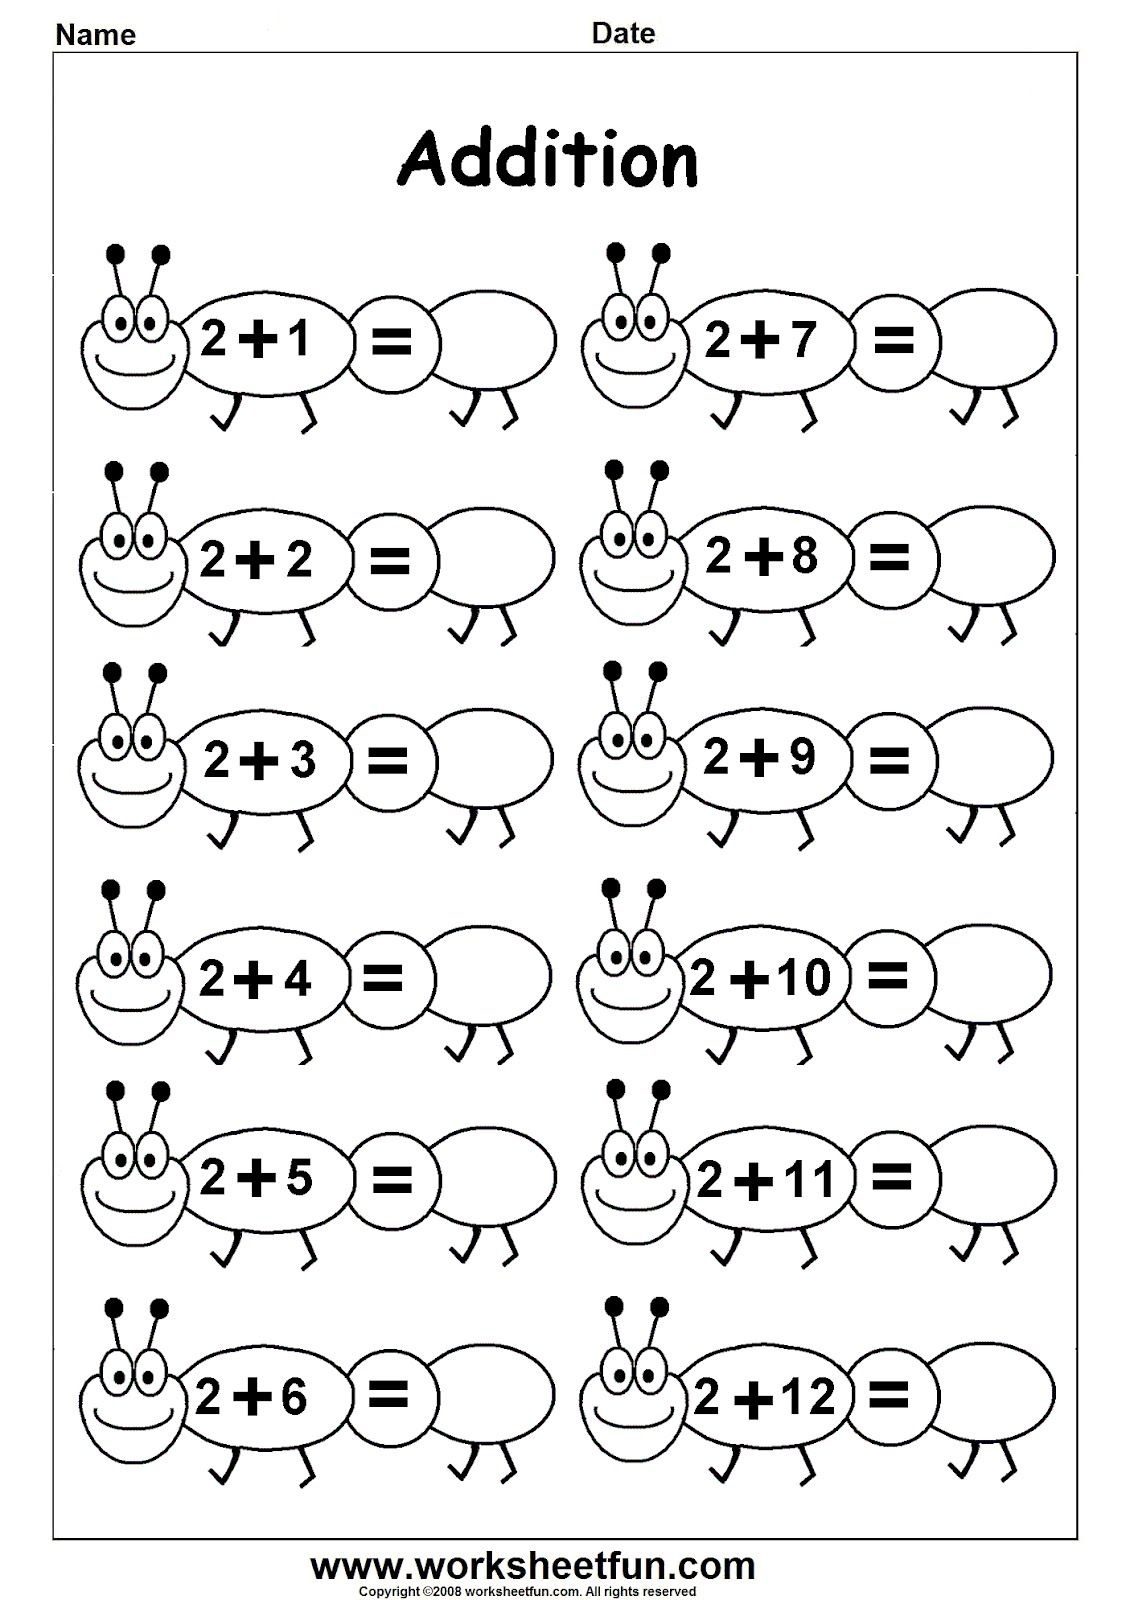 Worksheetfun - Free Printable Worksheets | Ethan School - Free Printable Math Worksheets For Kindergarten